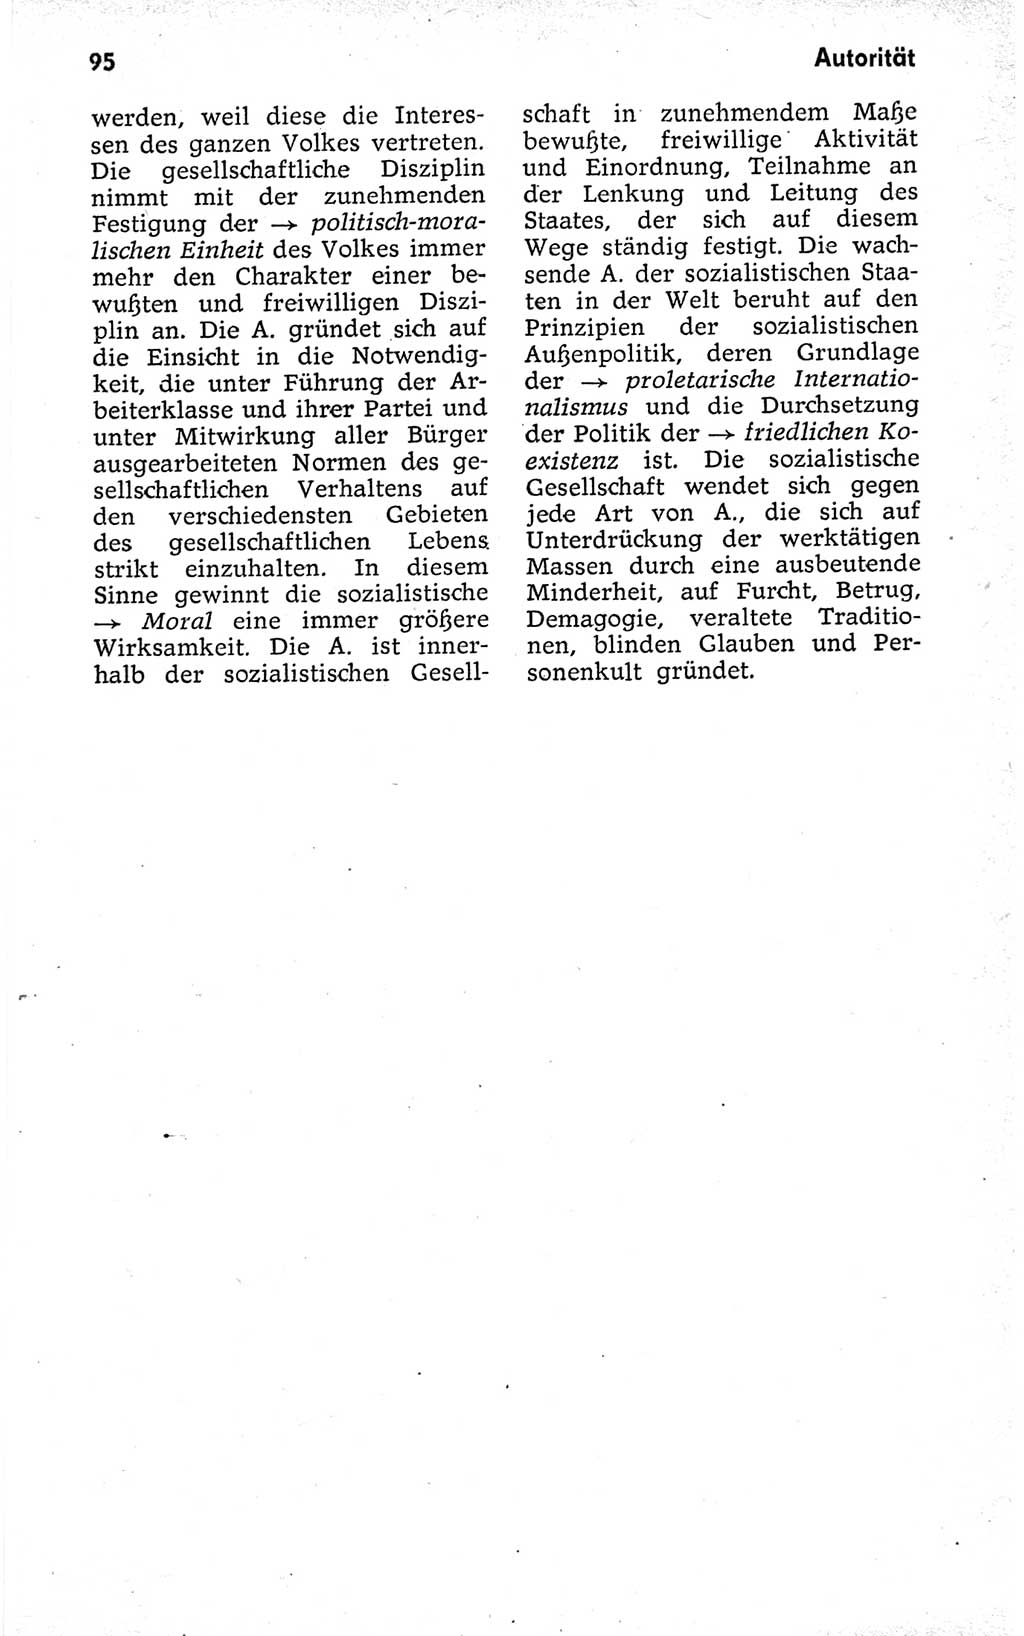 Kleines politisches Wörterbuch [Deutsche Demokratische Republik (DDR)] 1973, Seite 95 (Kl. pol. Wb. DDR 1973, S. 95)